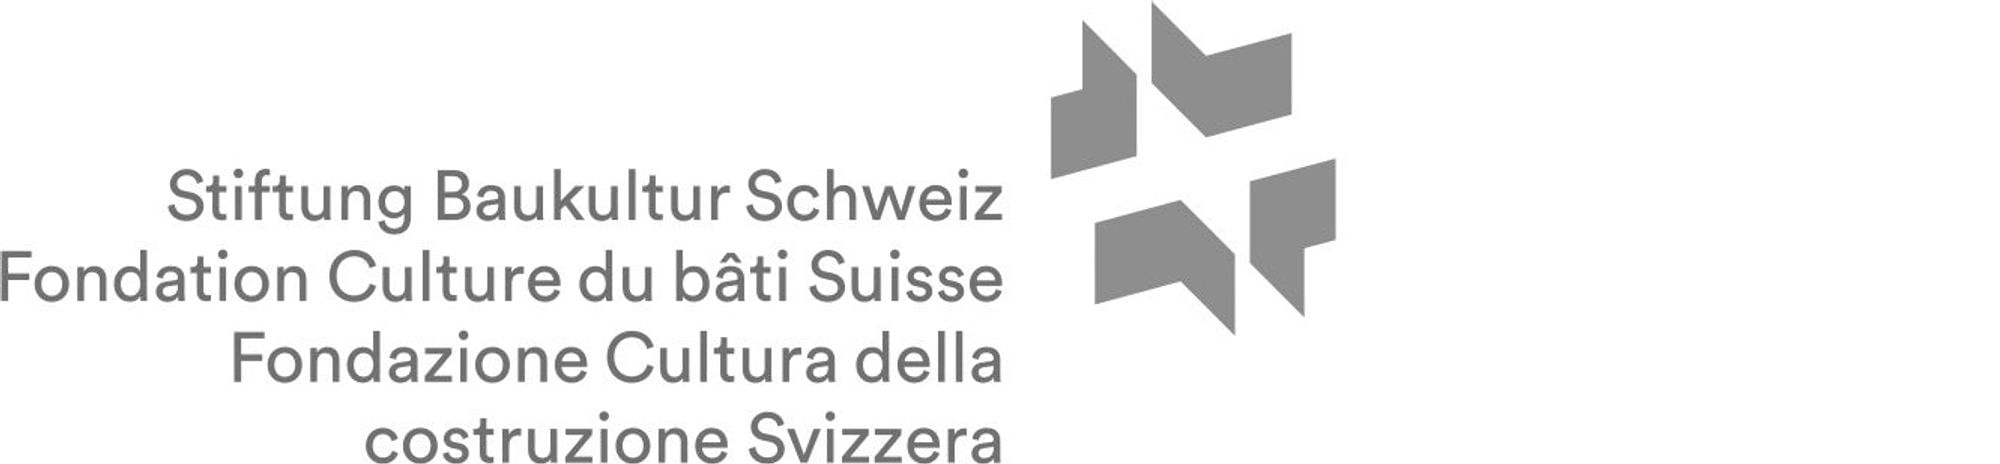 Stiftung Baukultur Schweiz grau klein